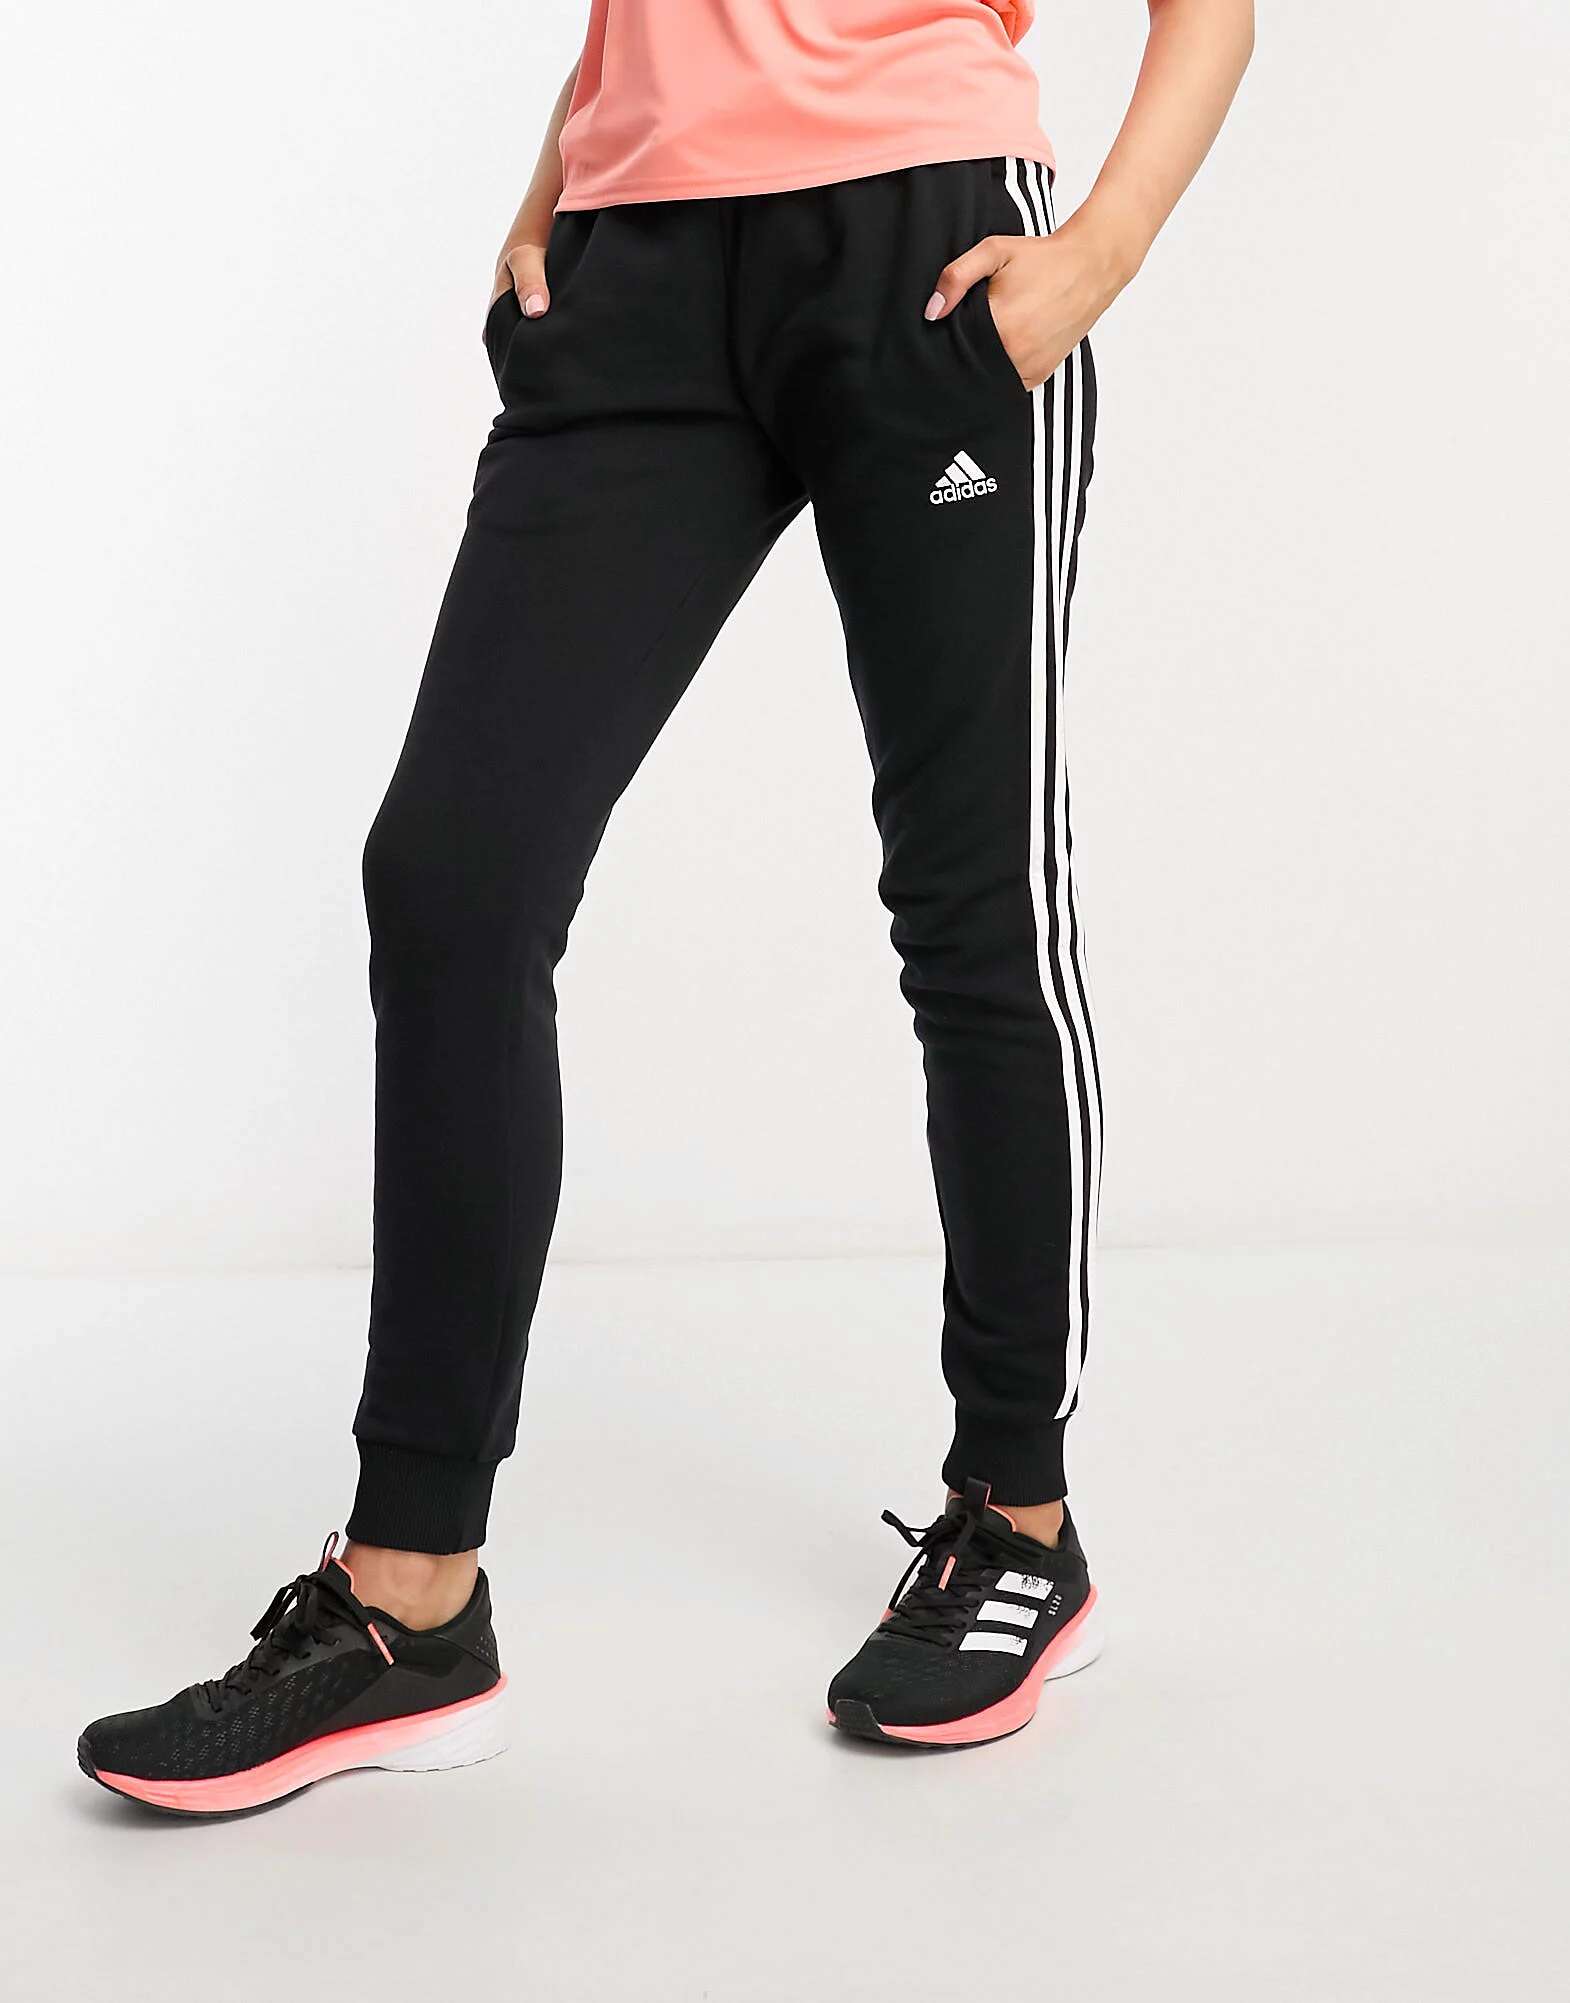 цена Черно-белые джоггеры с 3 полосками adidas Sportswear Essentials adidas performance